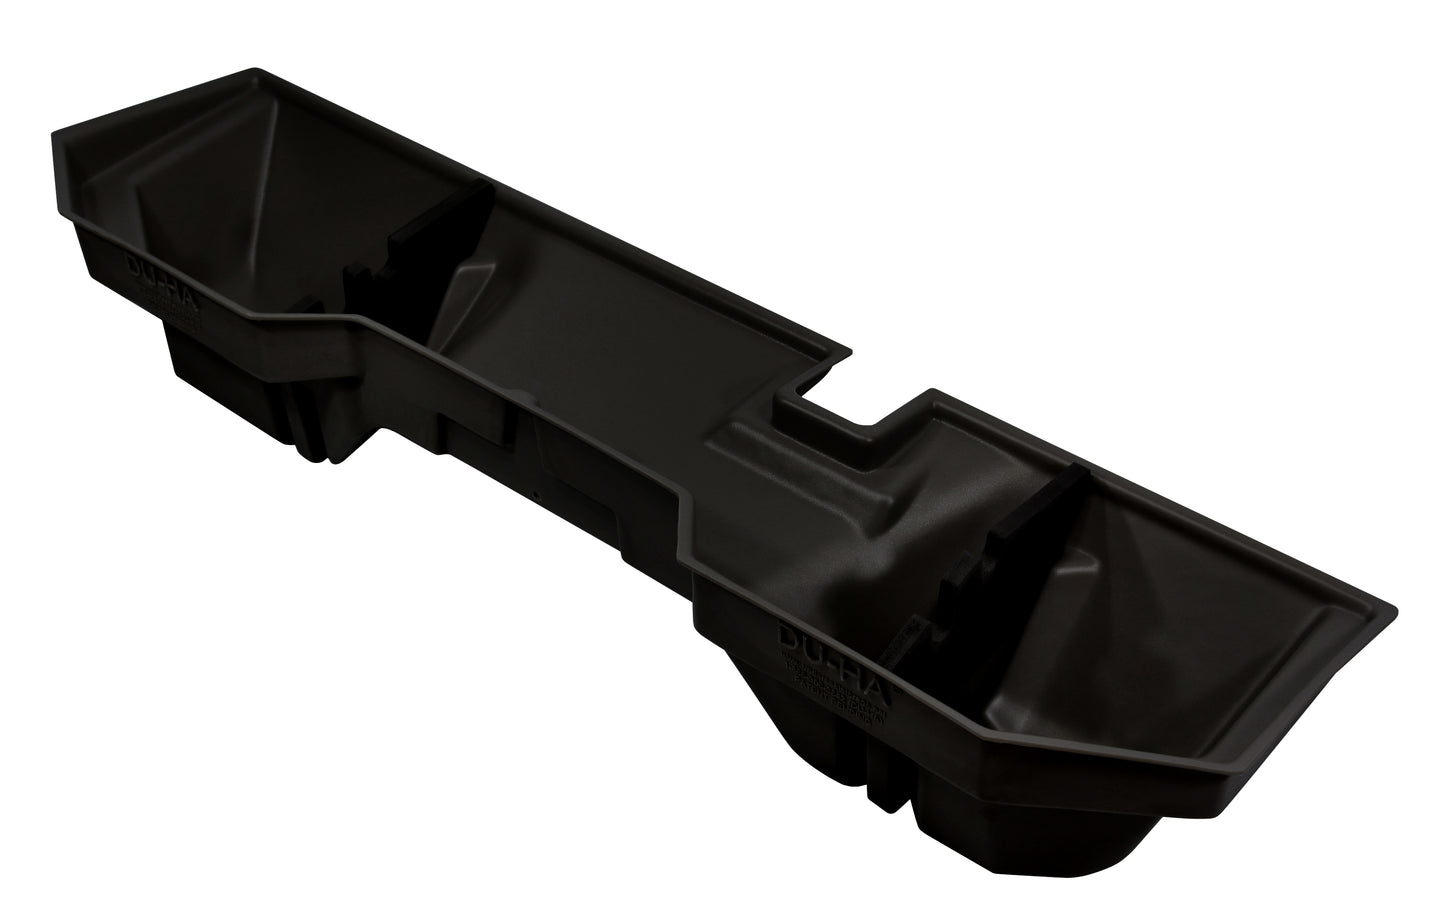 DU-HA 30016 Dodge Underseat Storage Console Organizer And Gun Case - Black